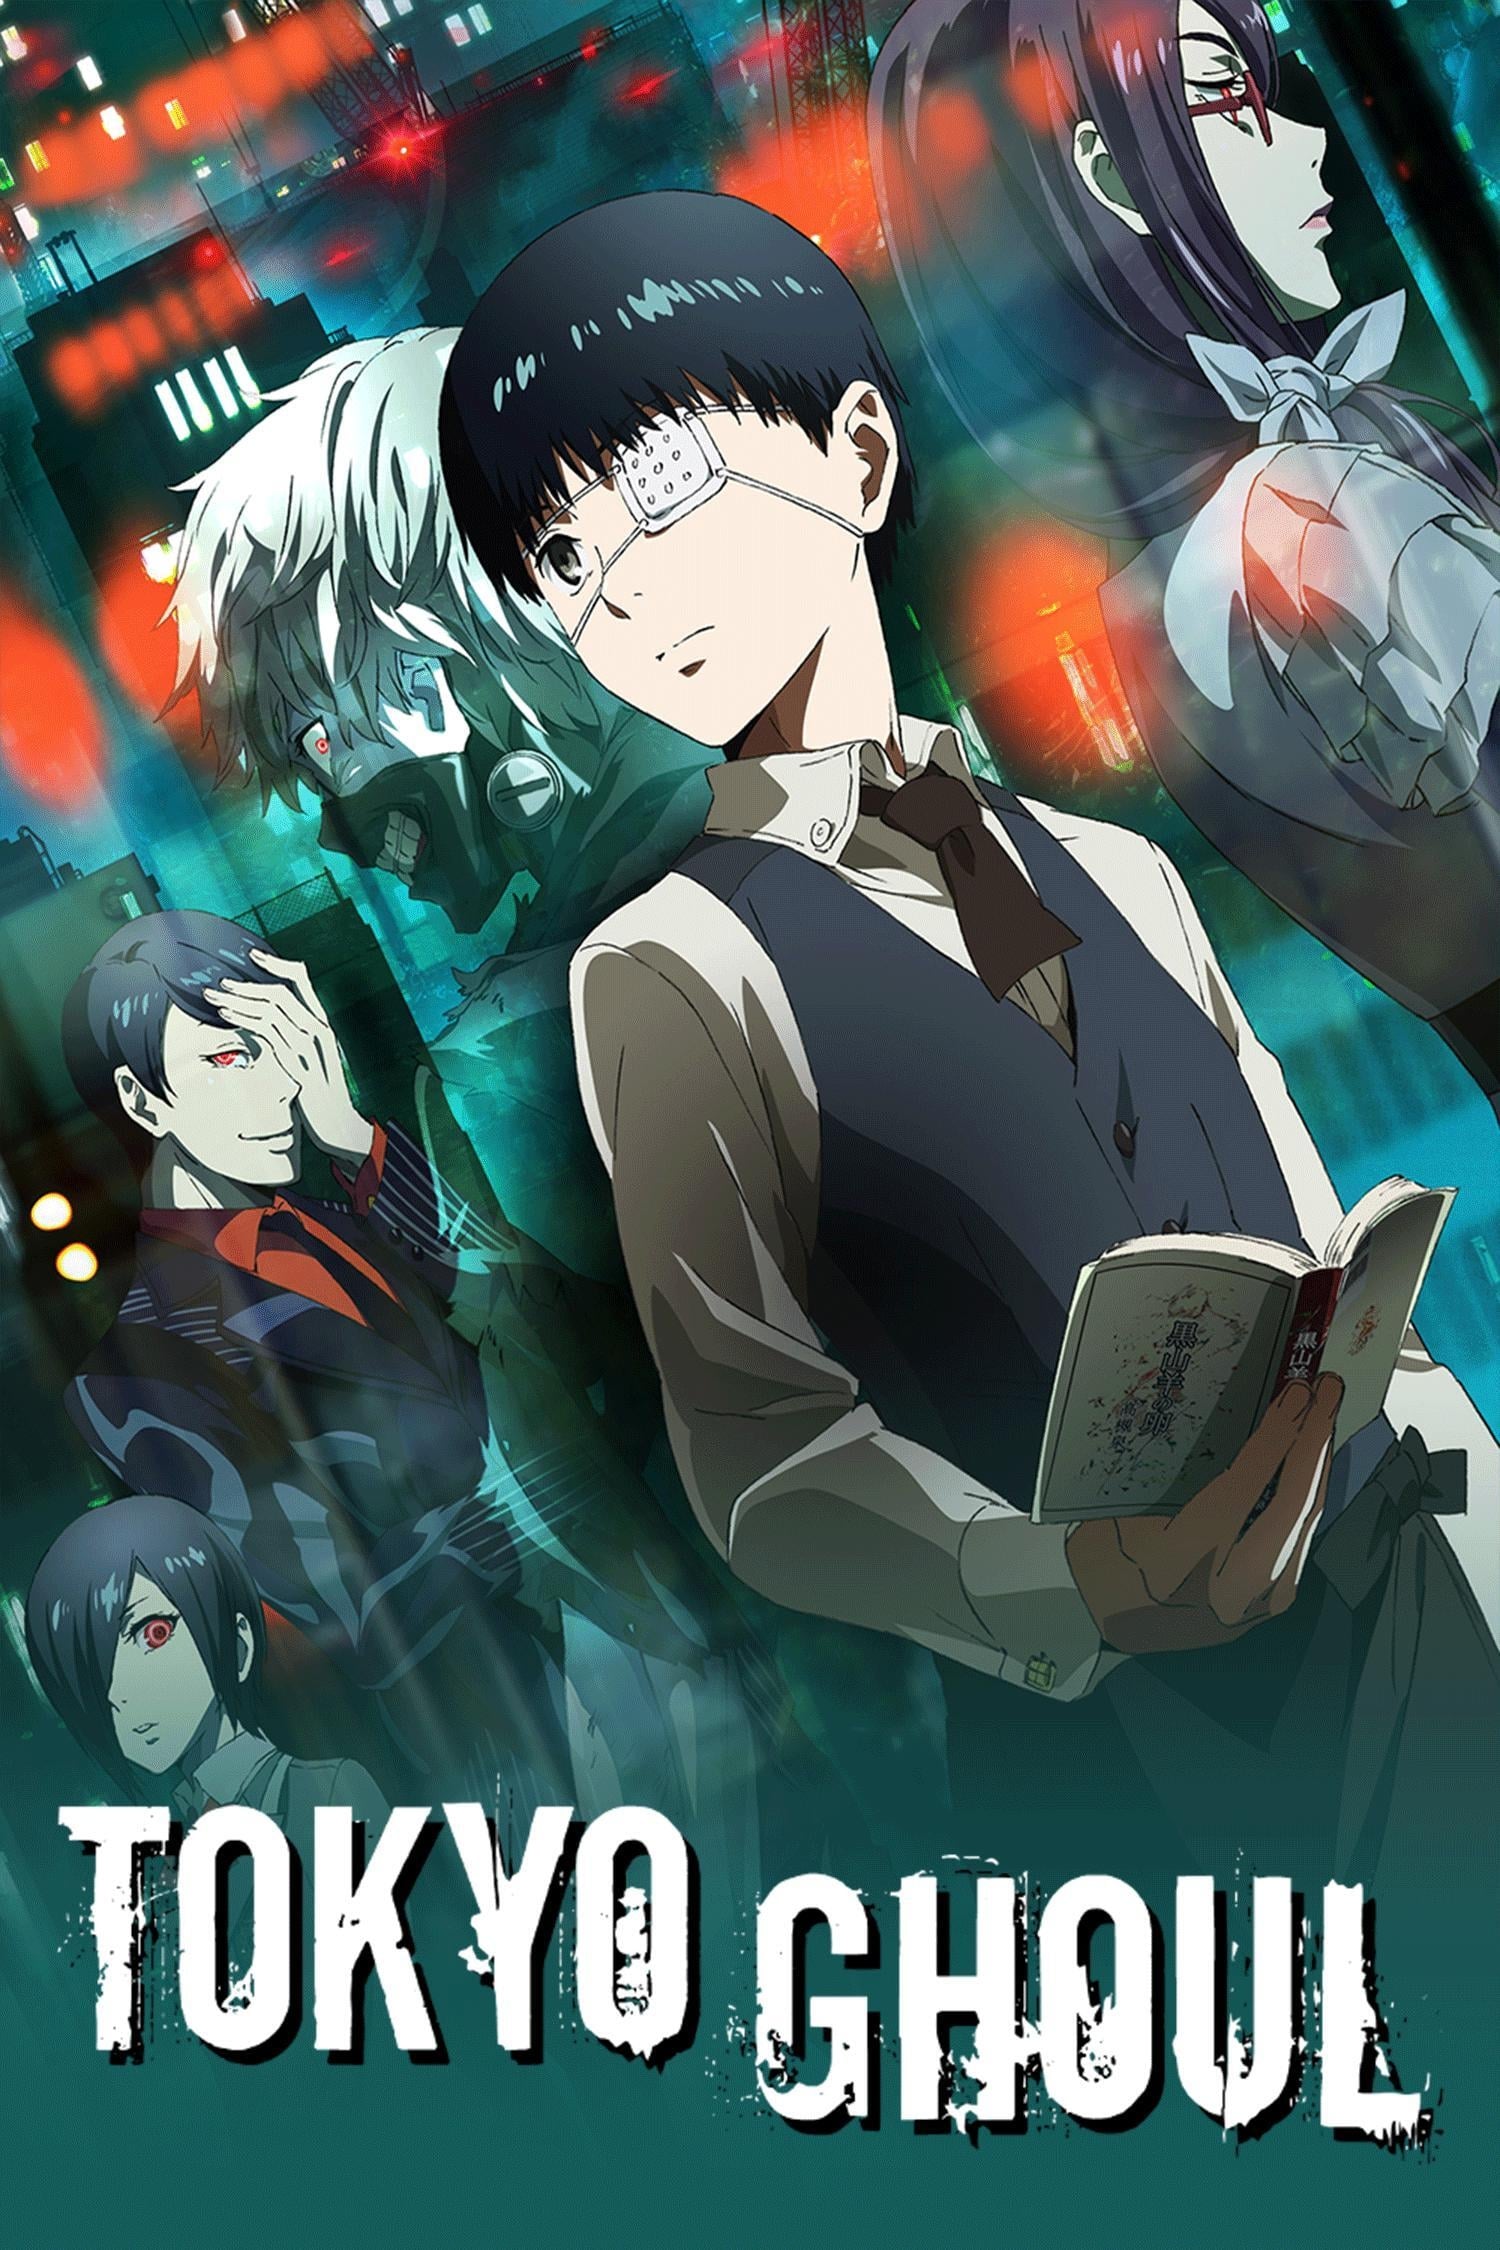 Tokyo Ghoul (TV Series 2014-2018) — The Movie Database (TMDB)